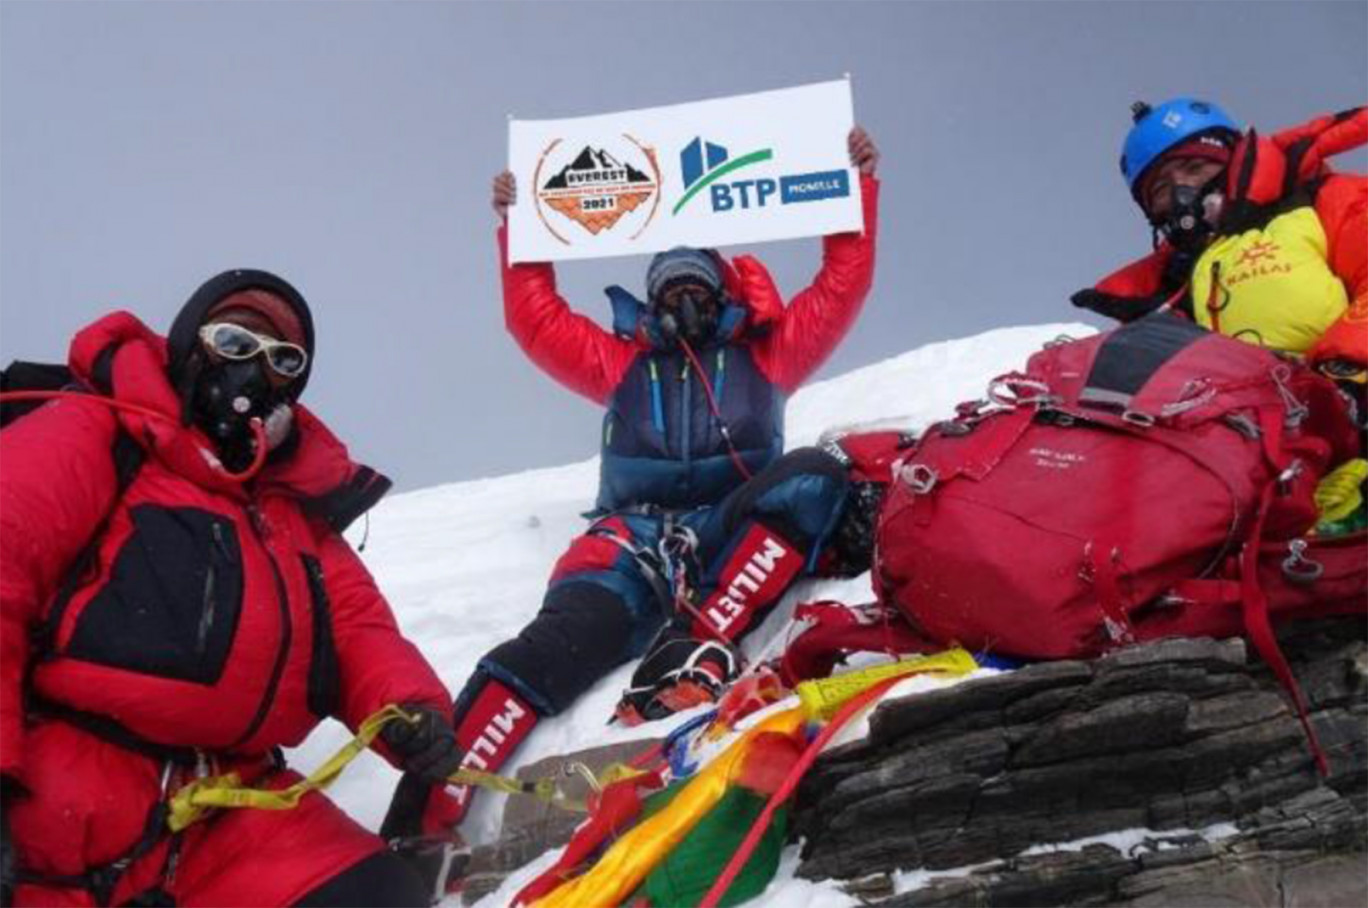 Jonathan Kubler, l’alpiniste-couvreur de l’entreprise Coverbat, viendra partager son exploit de l’ascension de l’Everest, ce 15 juillet, à la Fédération BTP Moselle.